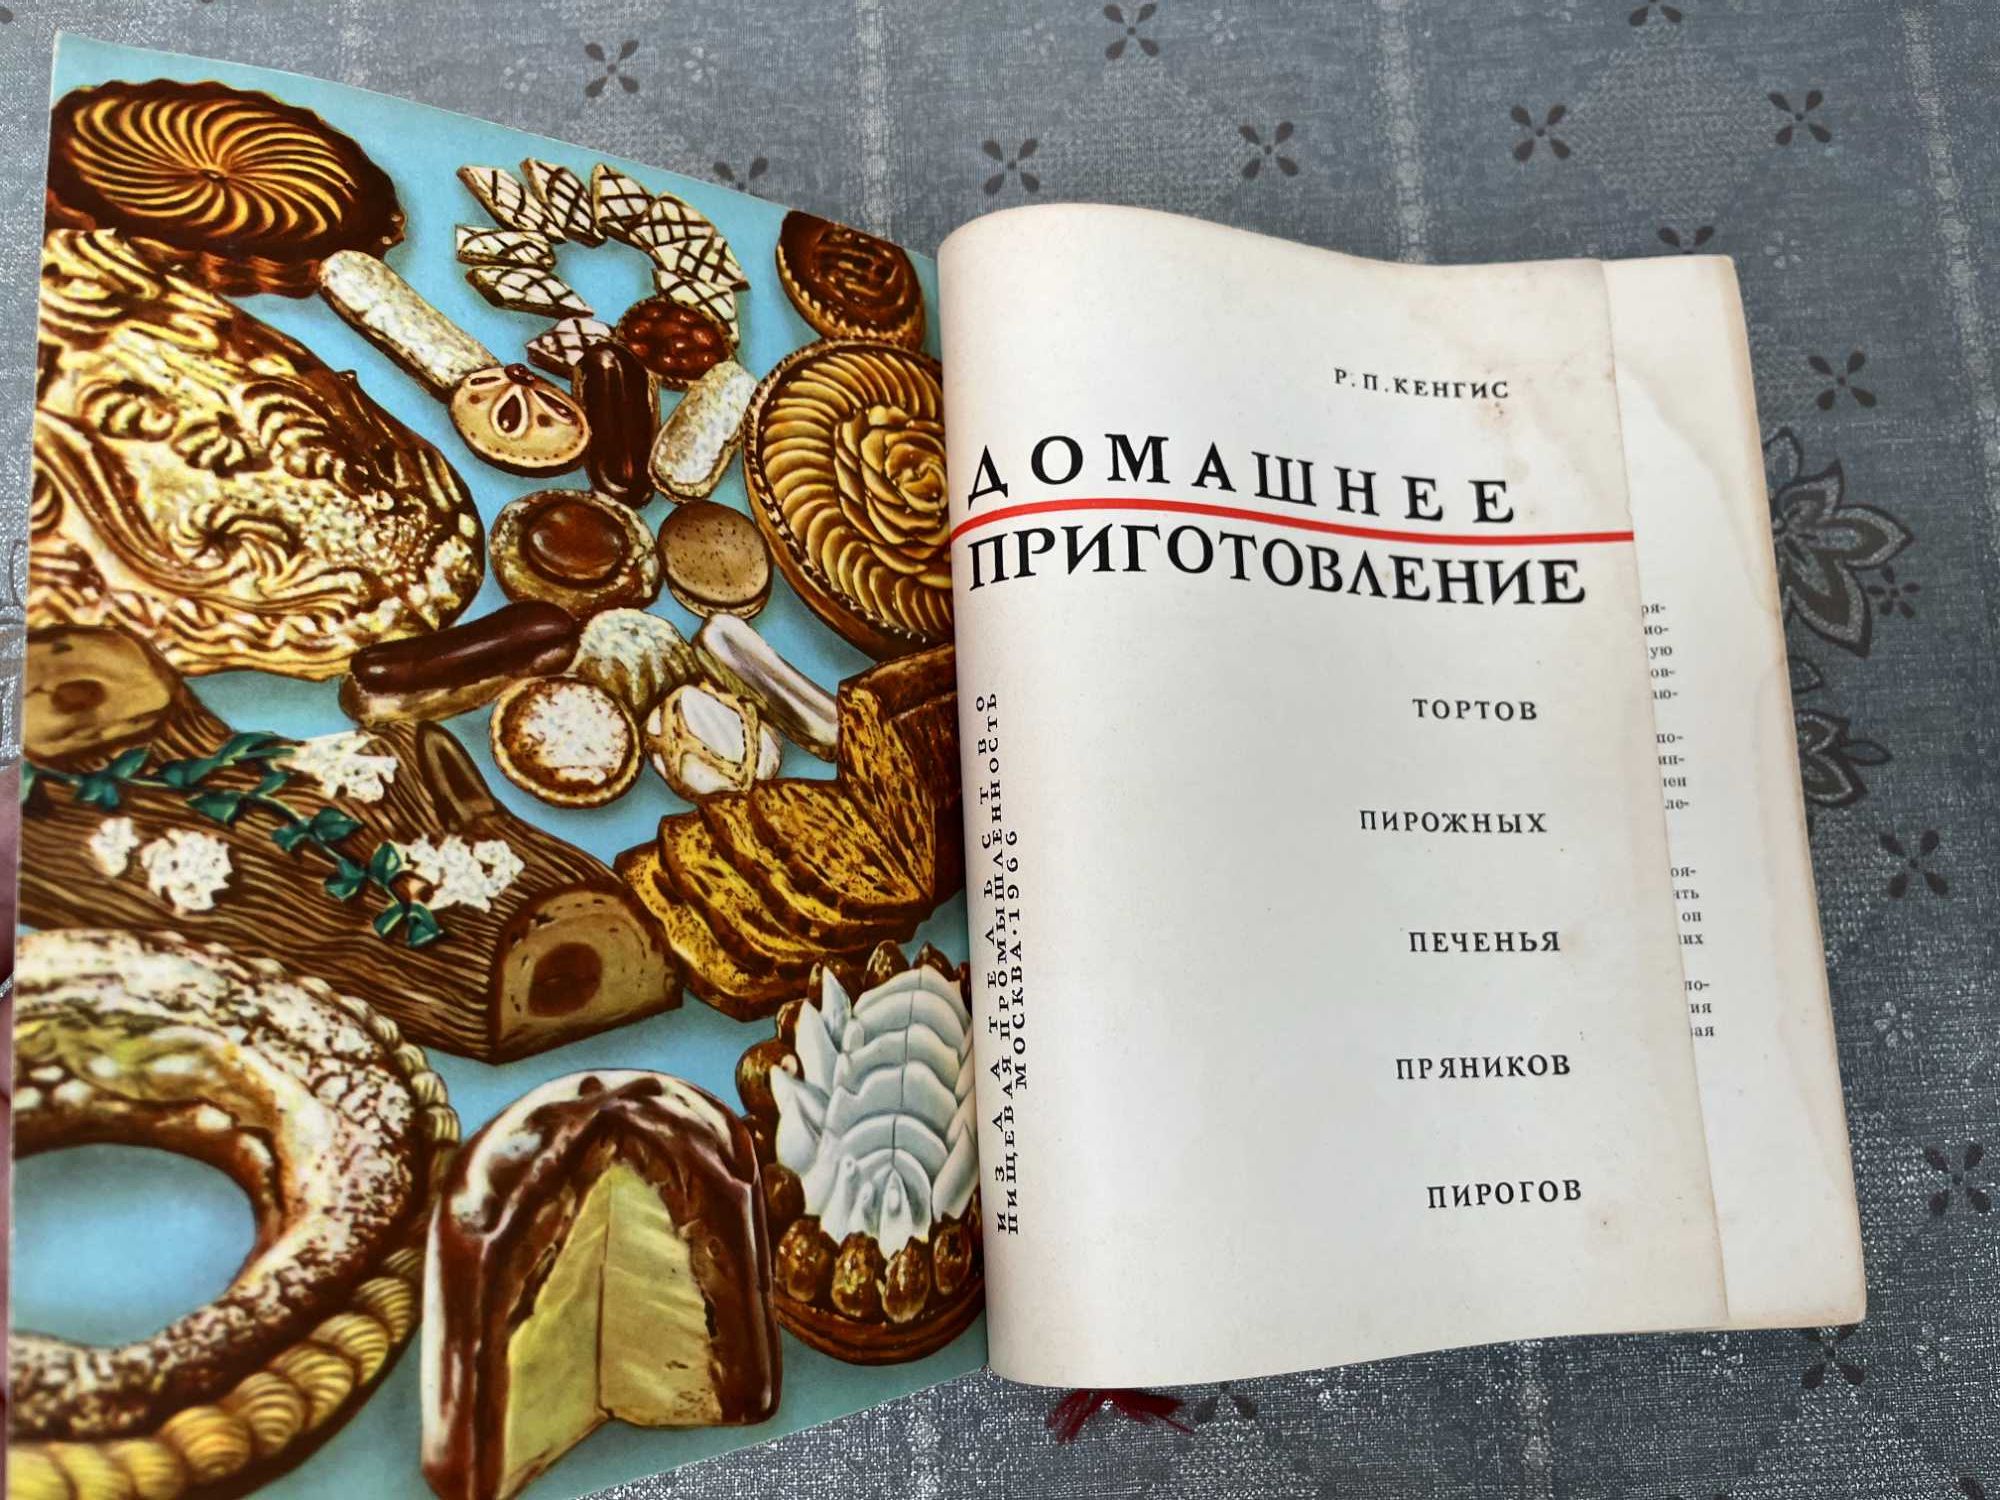 "Домашнее приготовление тортов,пирожных,печенья,пряников,пирогов"1965